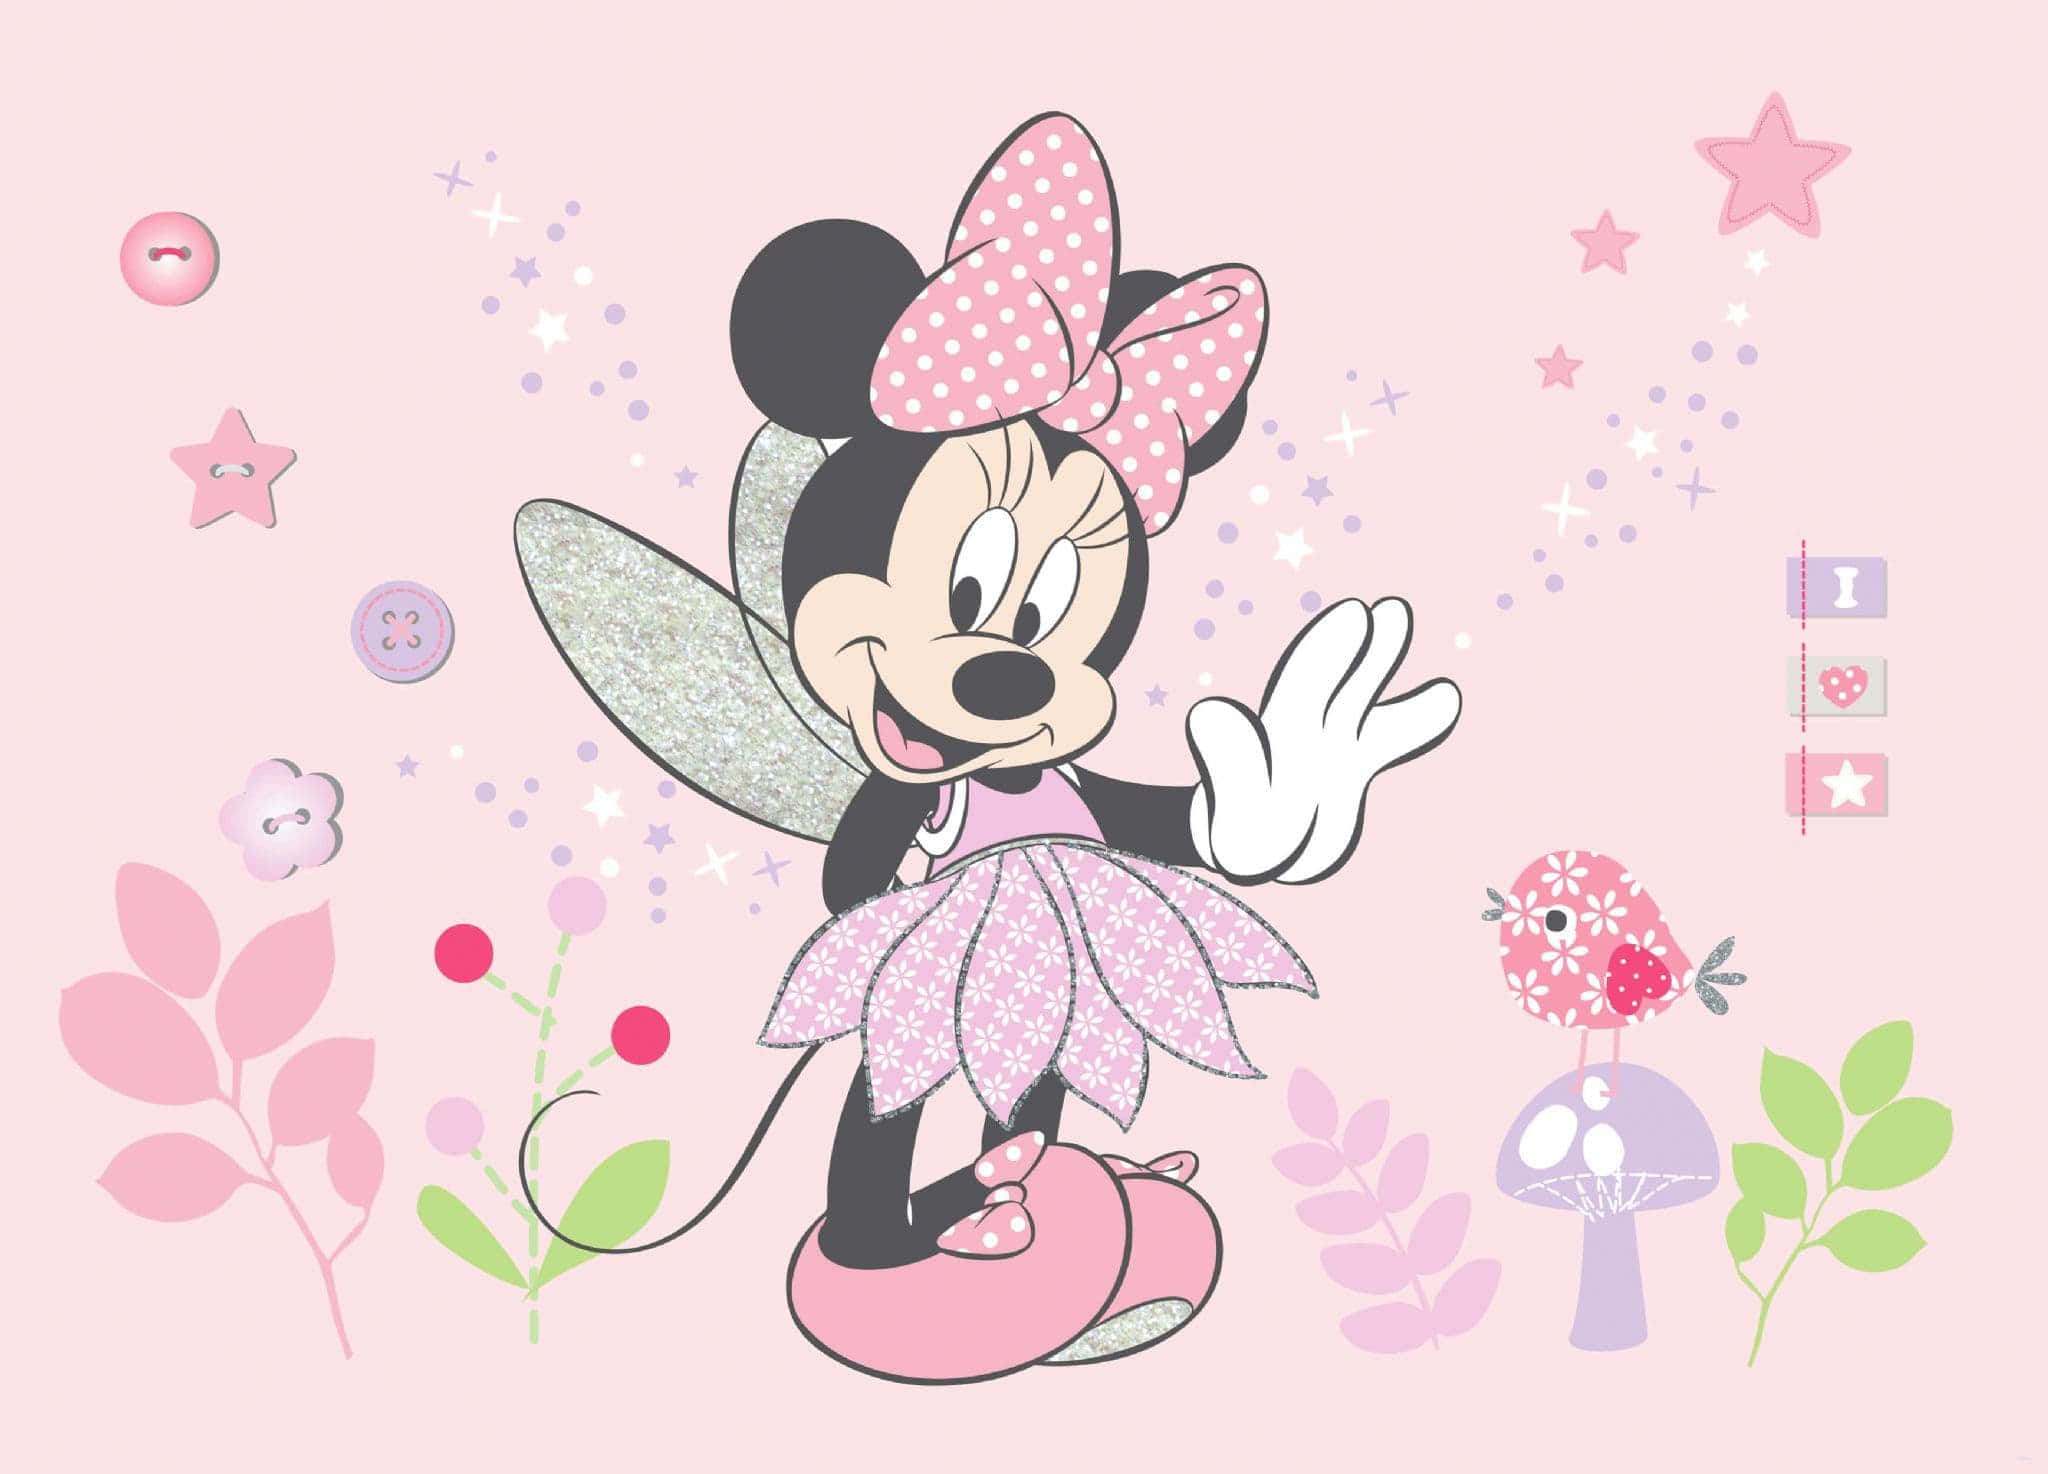 Feieredie Magie Von Disney Mit Minnie Maus!